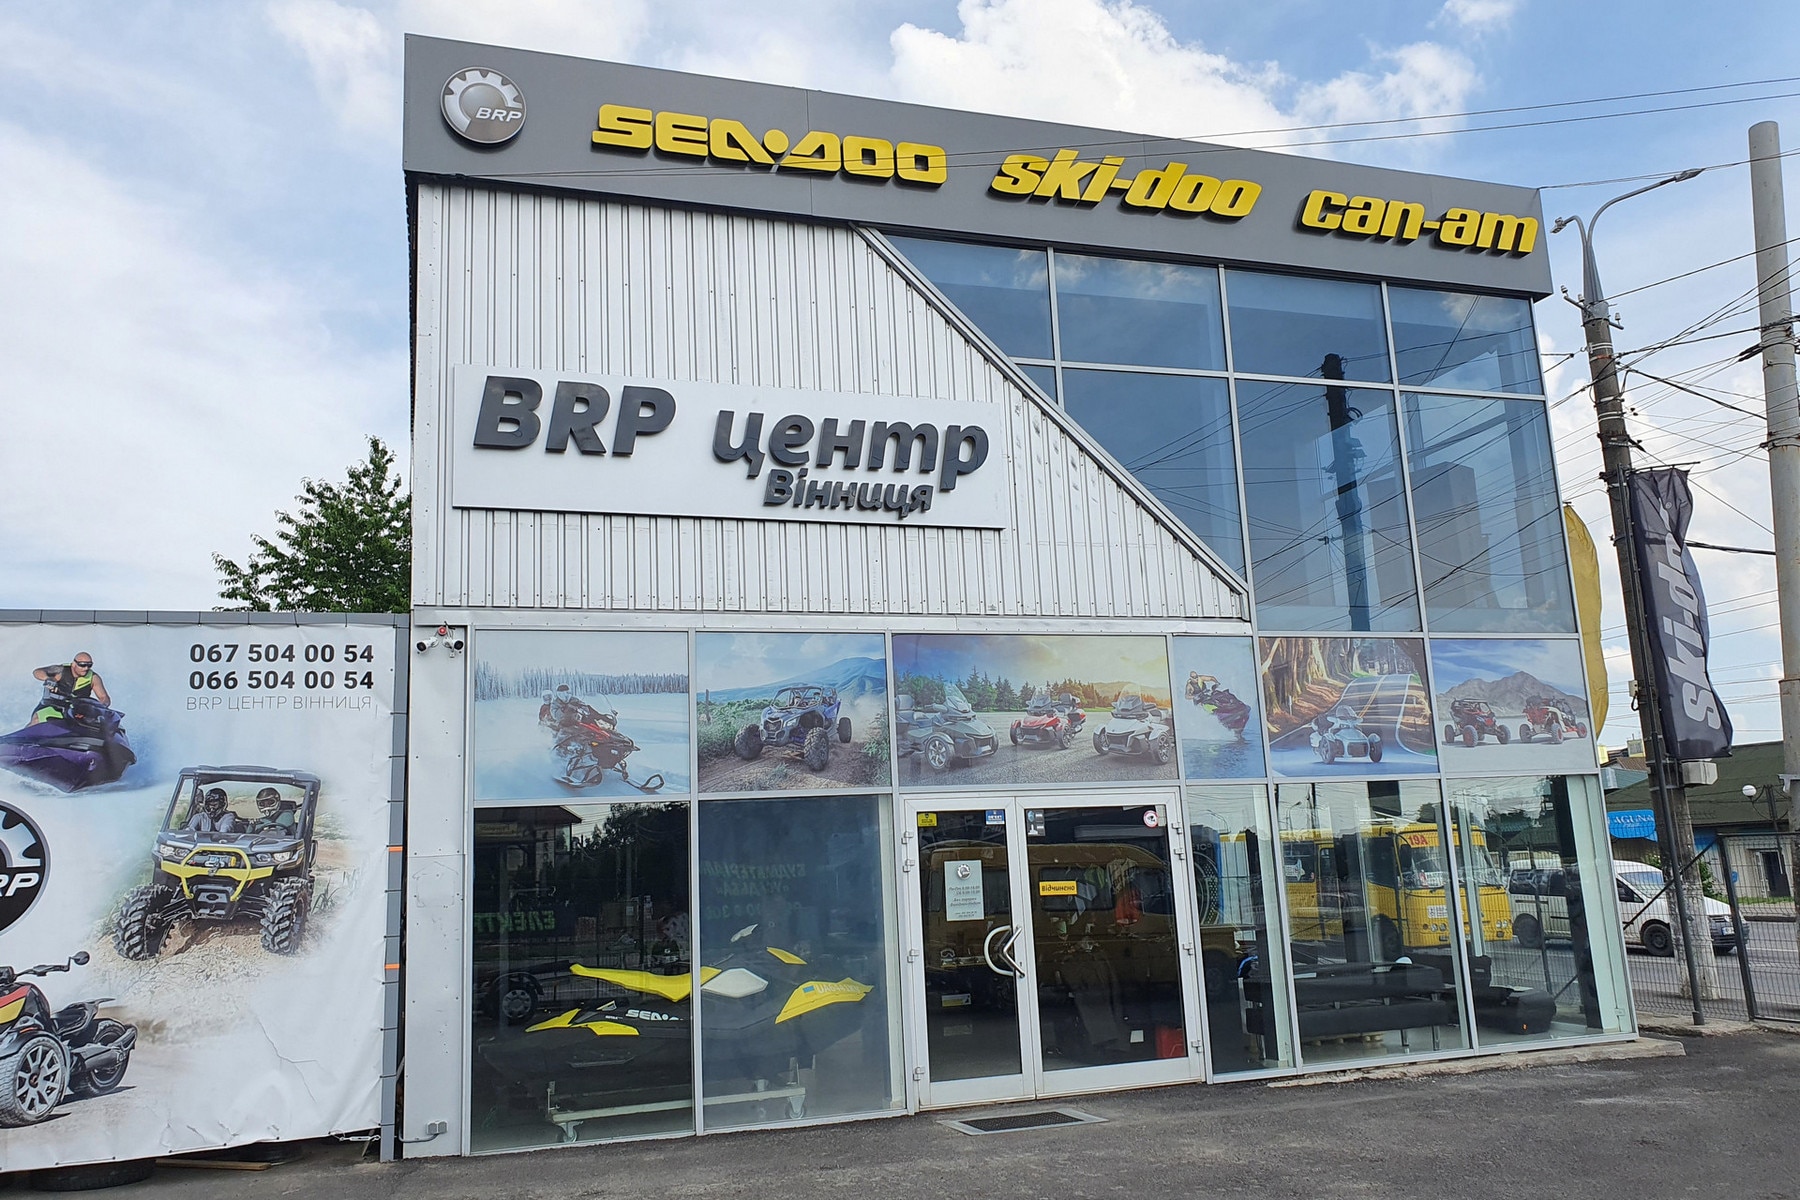 BRP Центр Вінниця